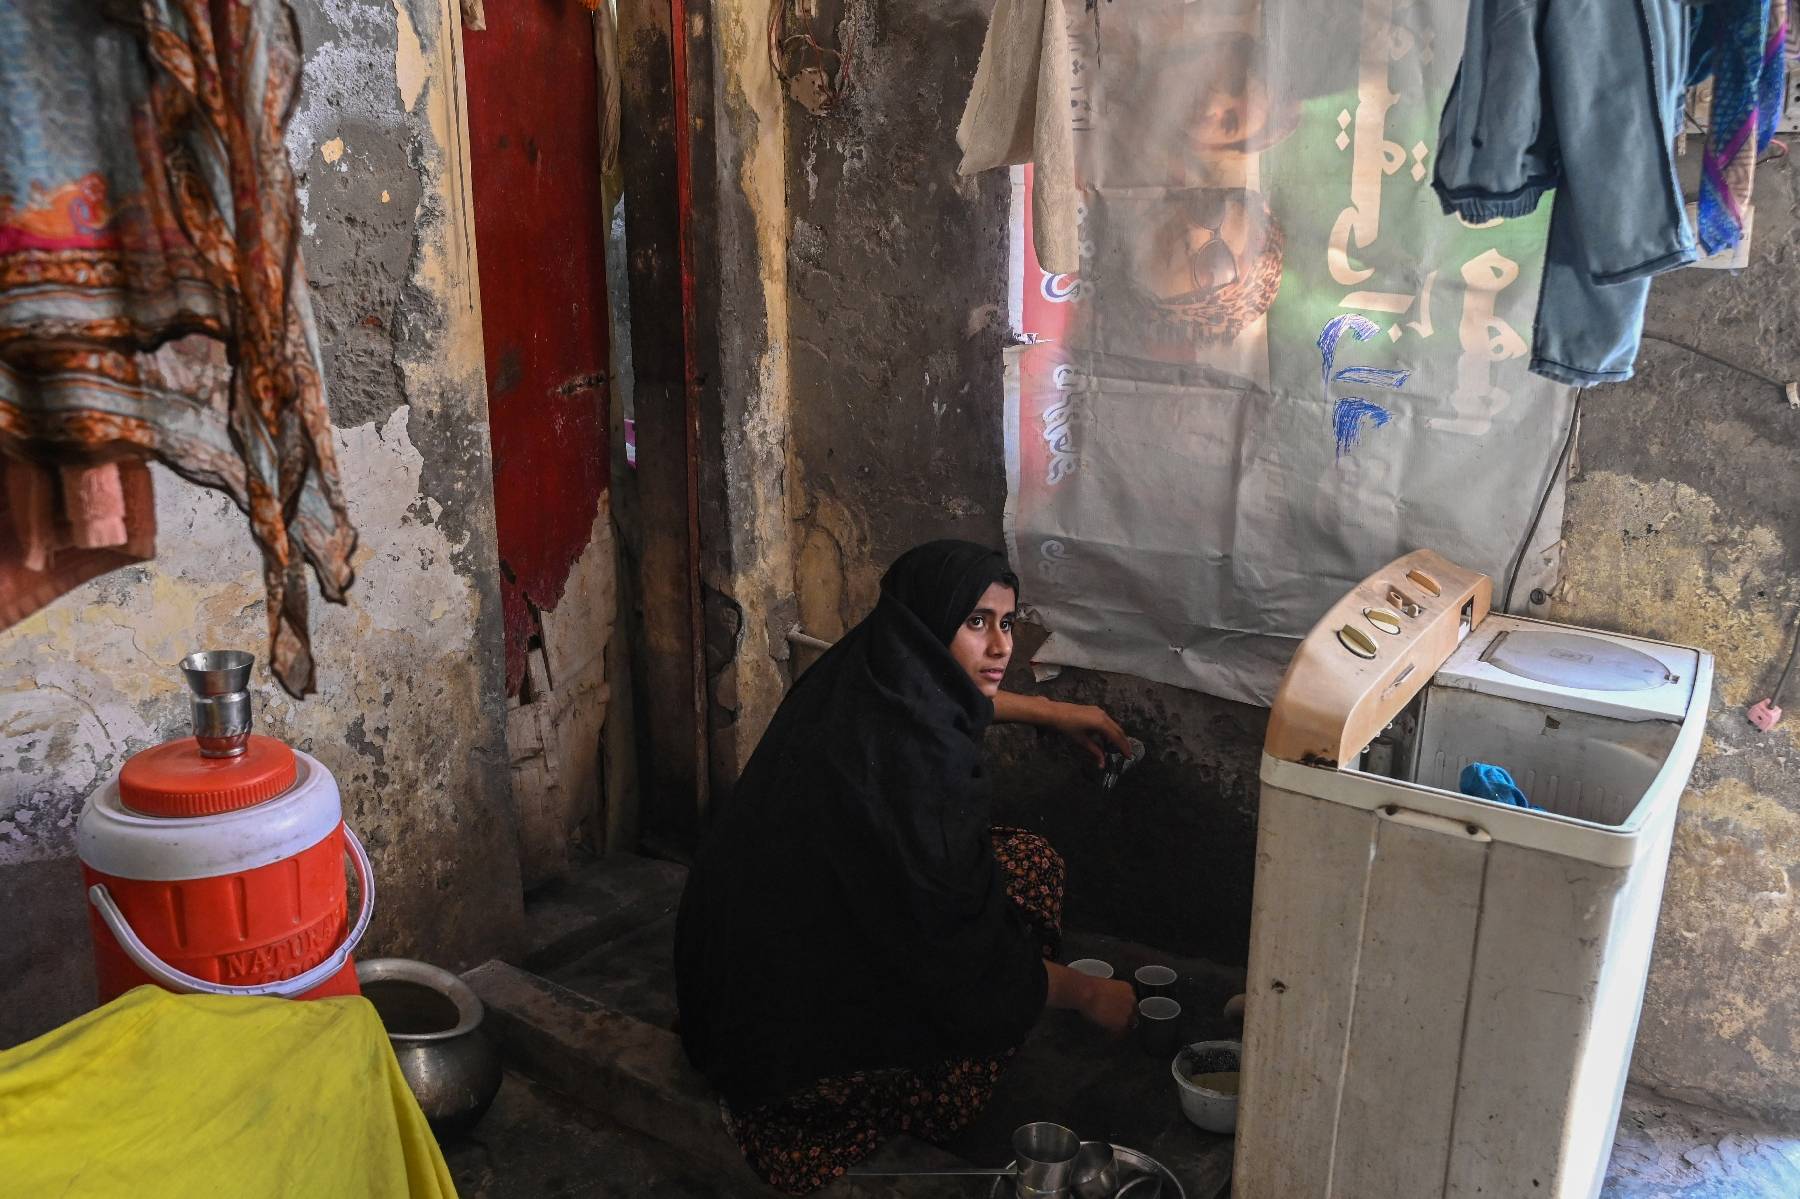 Au Pakistan, les plus pauvres paient au prix fort les difficultés économiques